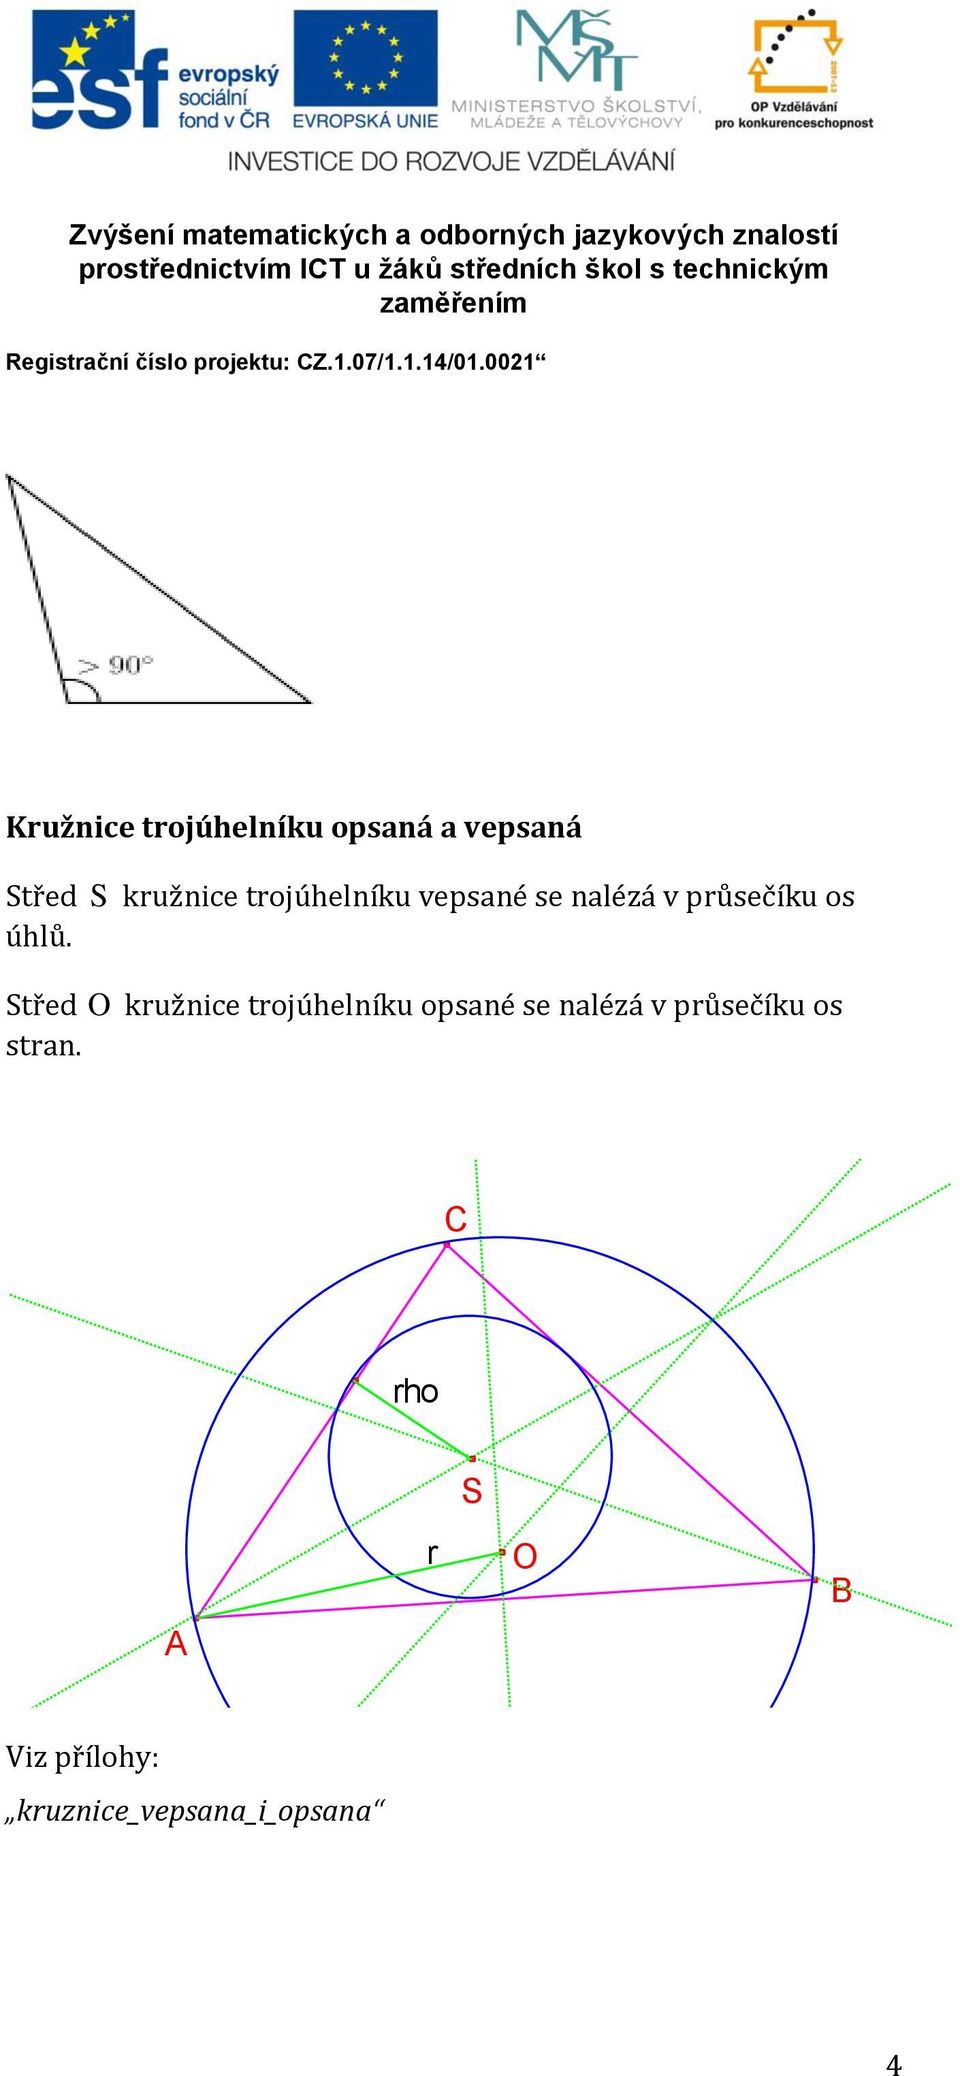 Střed O kružnice trojúhelníku opsané se nalézá v průsečíku